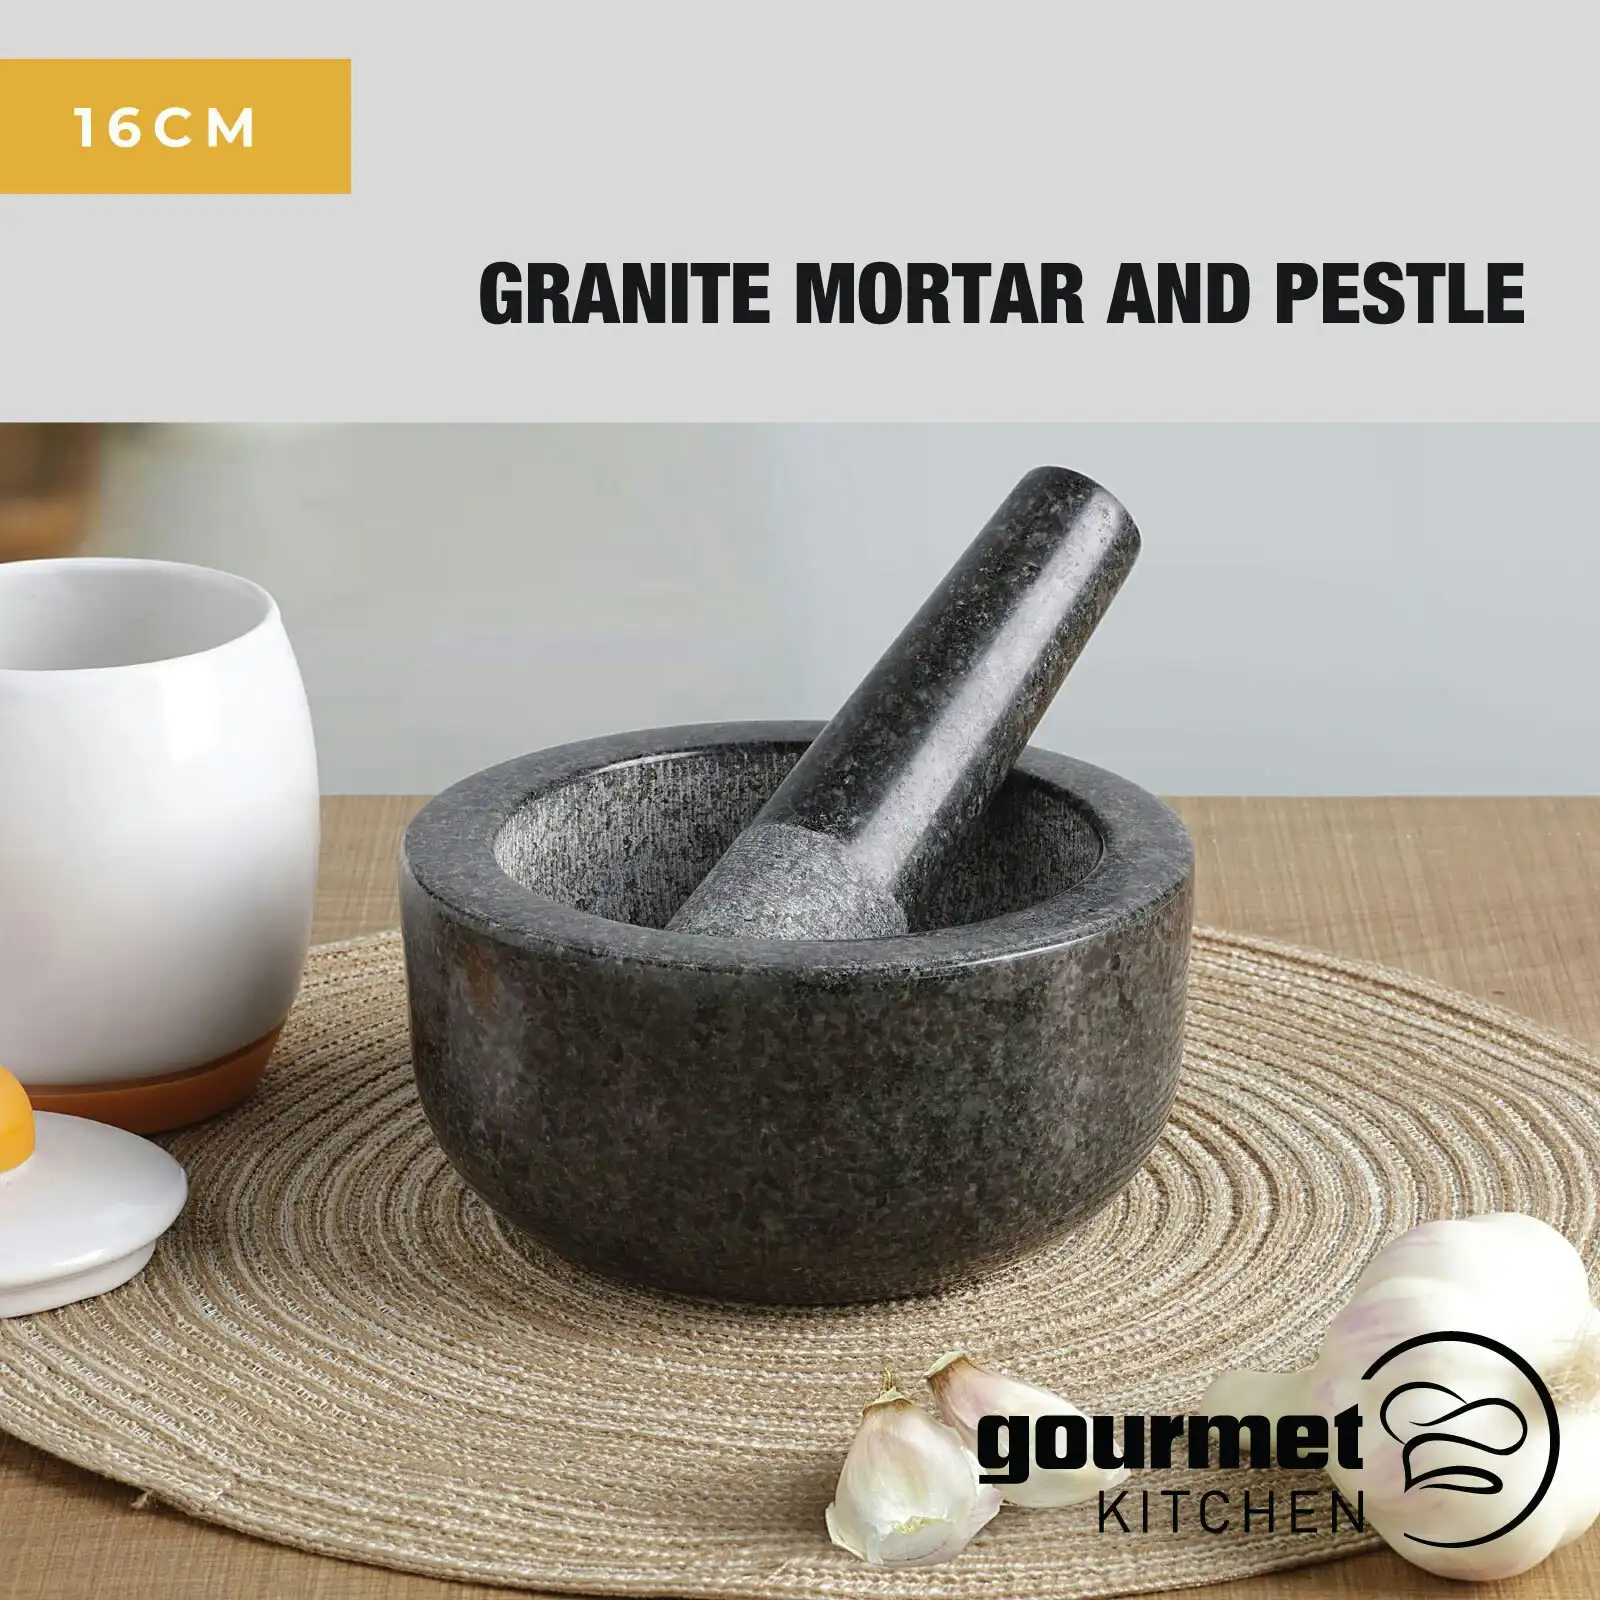 Gourmet Kitchen Granite Mortar And Pestle Dark Granite 16cm